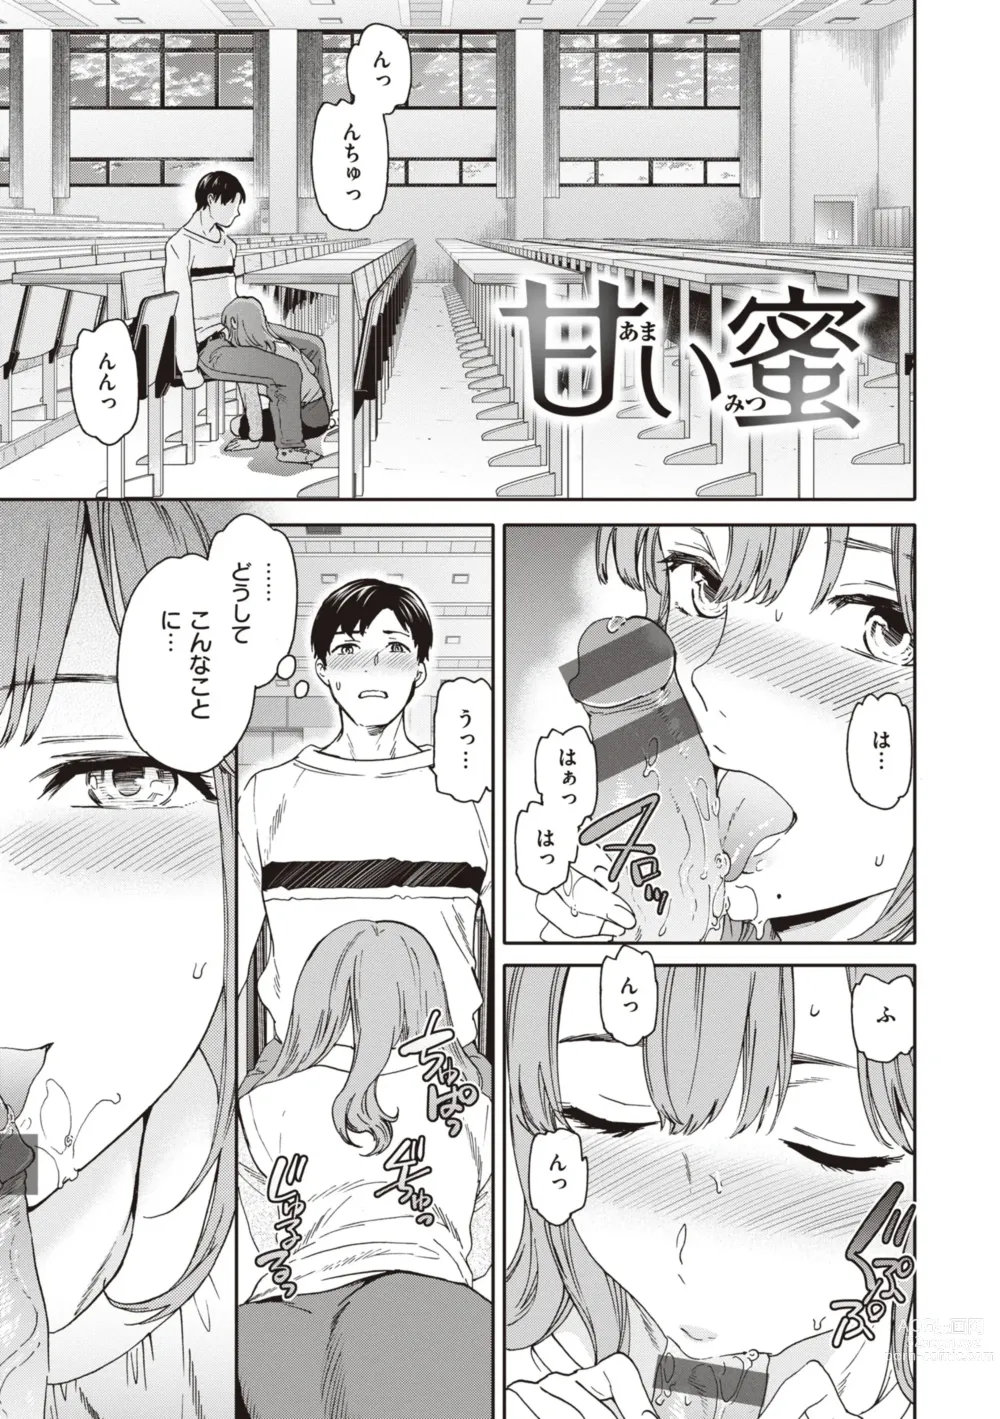 Page 3 of manga Ippai Yurashite - Bounce me a lot